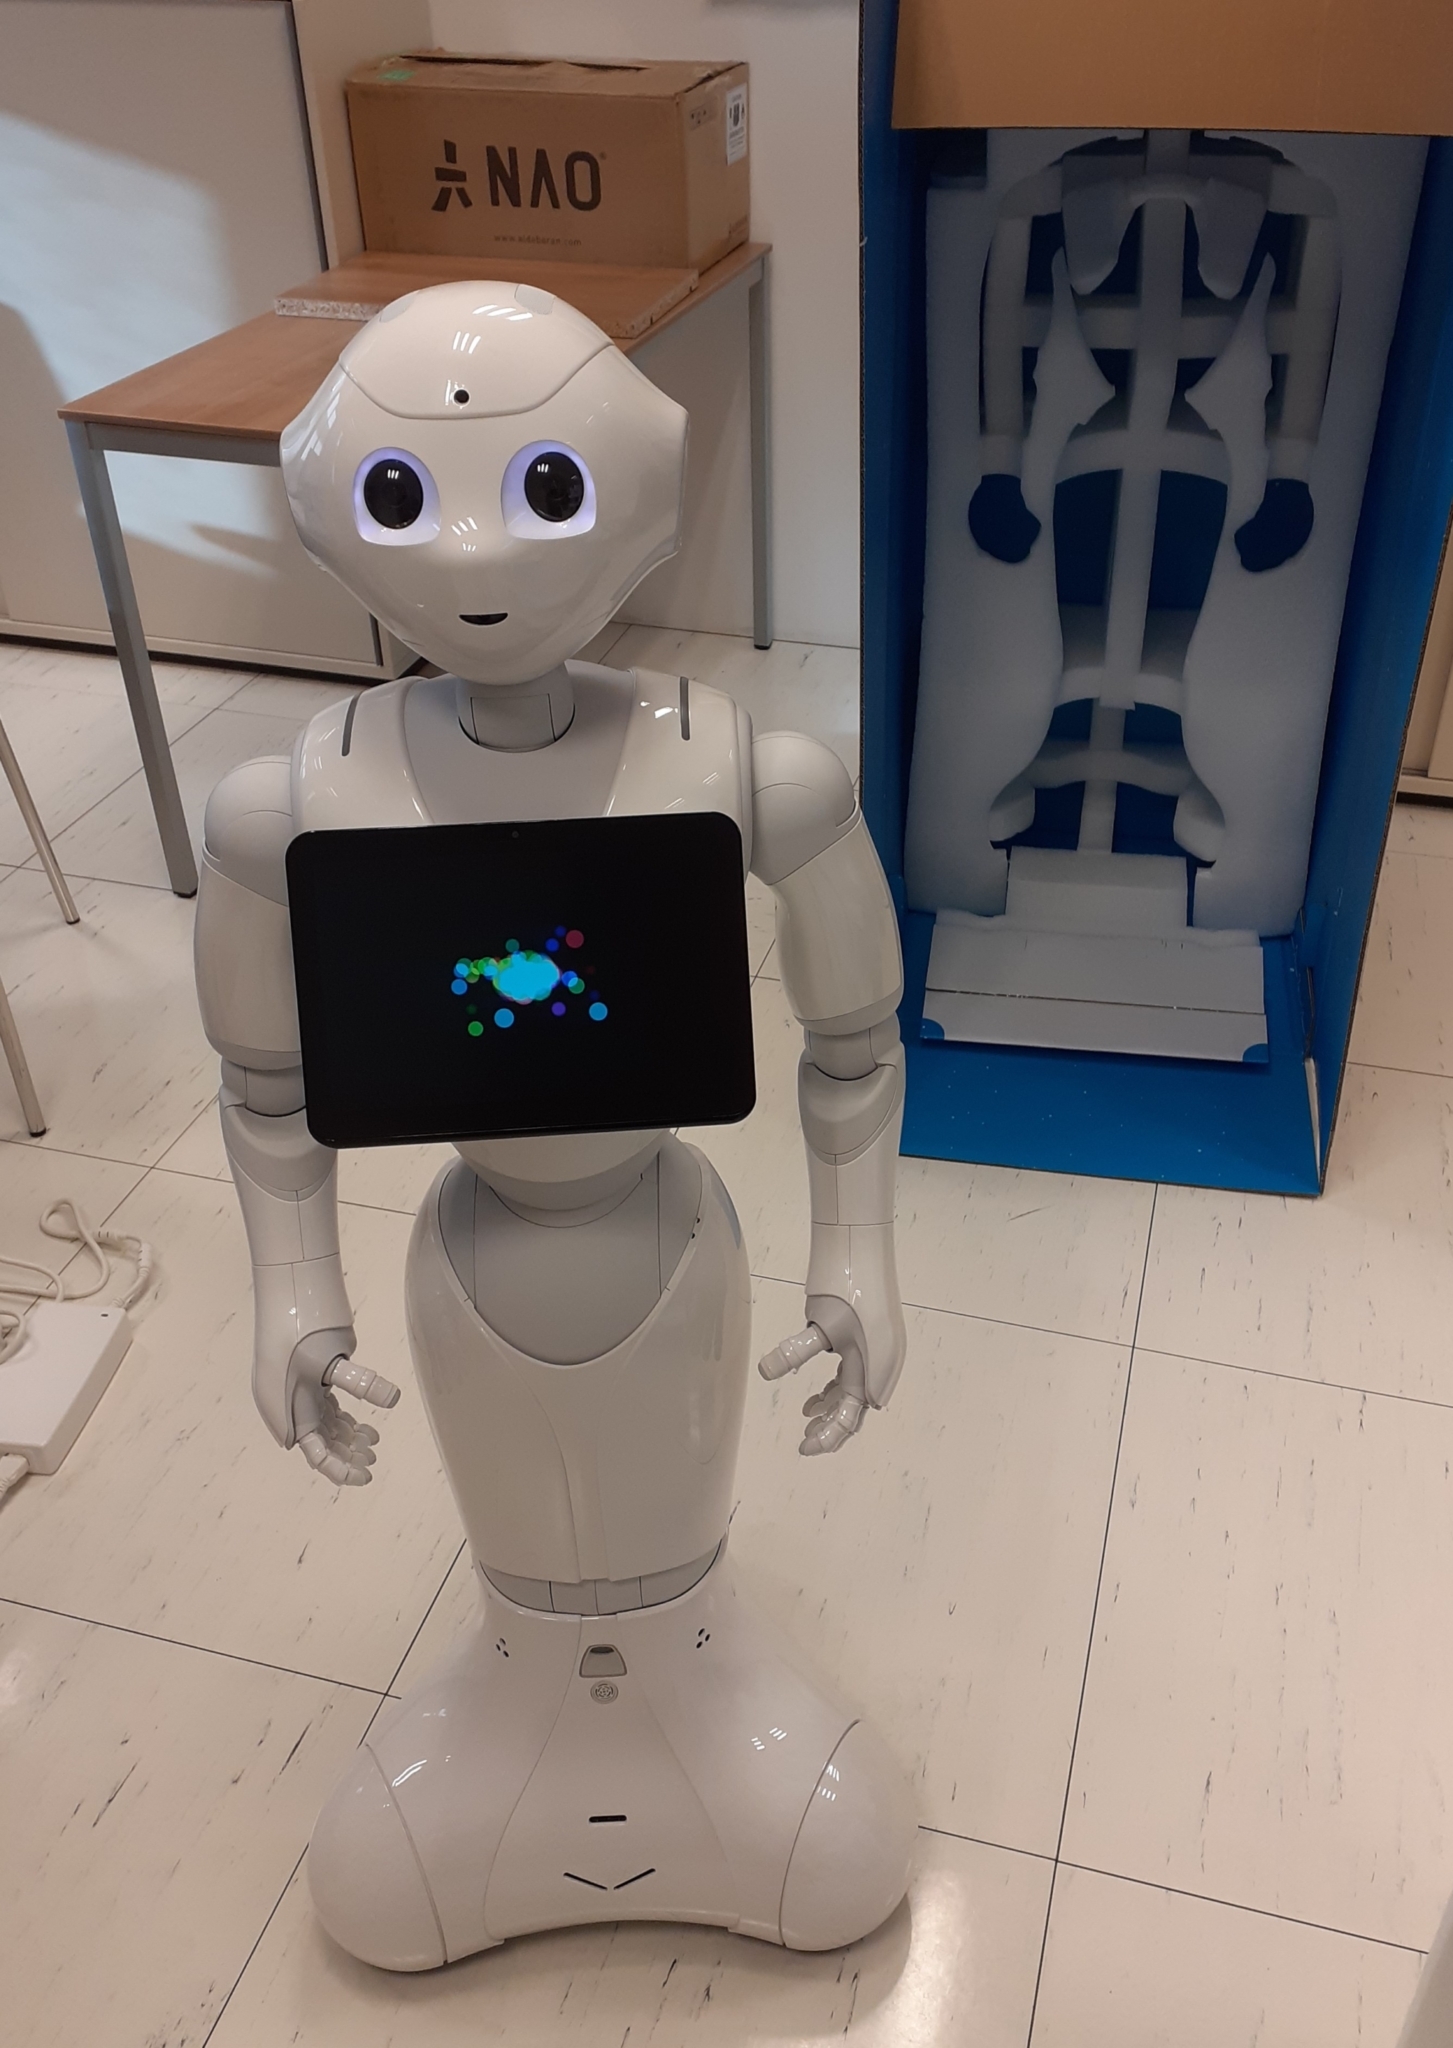 Ein kleiner weißer Roboter mit einem Display auf der Brust